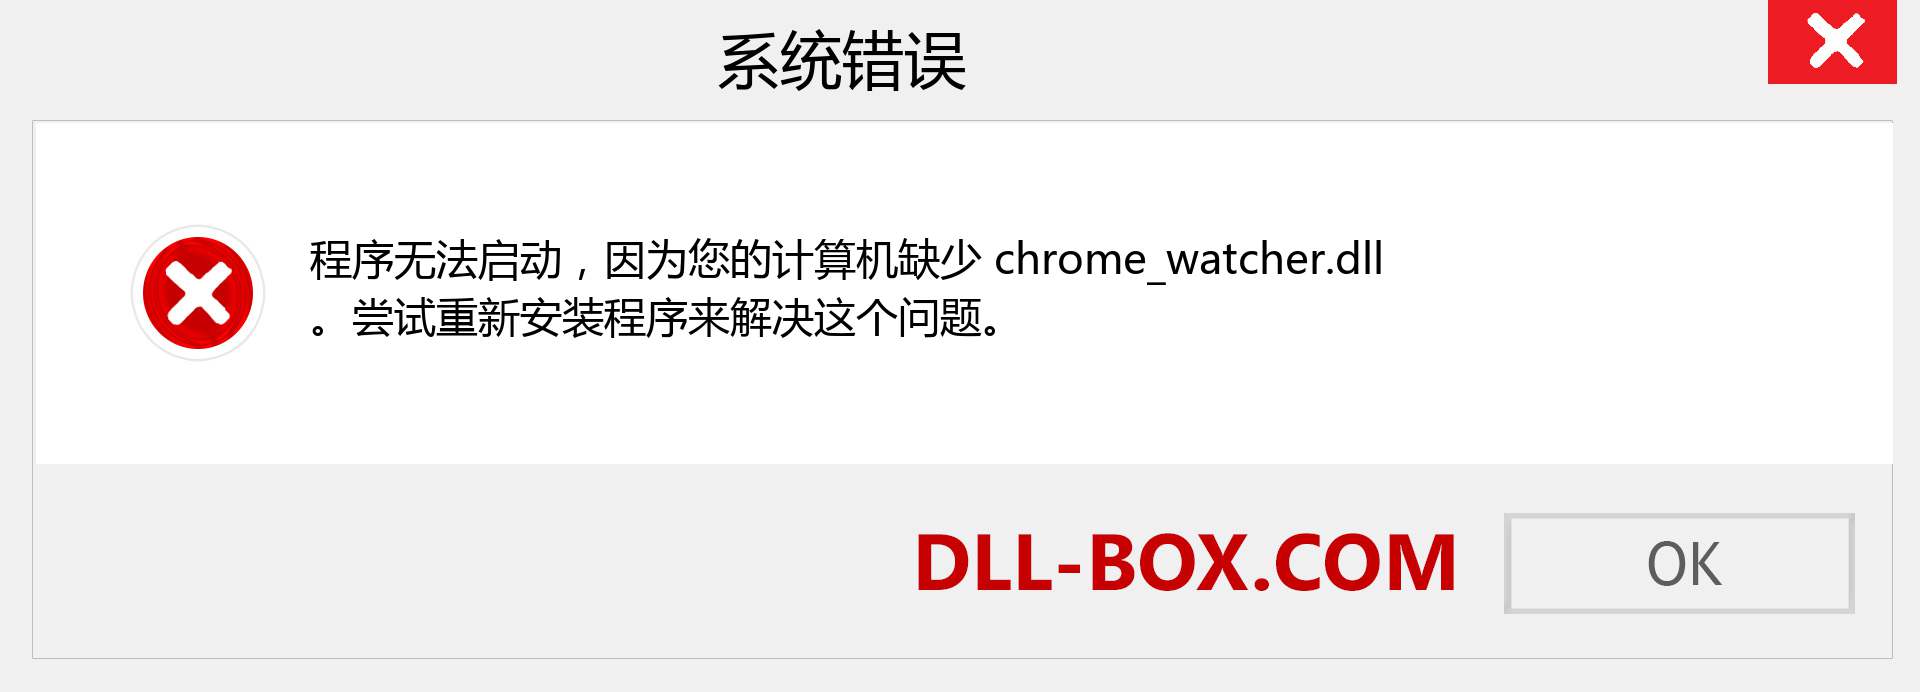 chrome_watcher.dll 文件丢失？。 适用于 Windows 7、8、10 的下载 - 修复 Windows、照片、图像上的 chrome_watcher dll 丢失错误